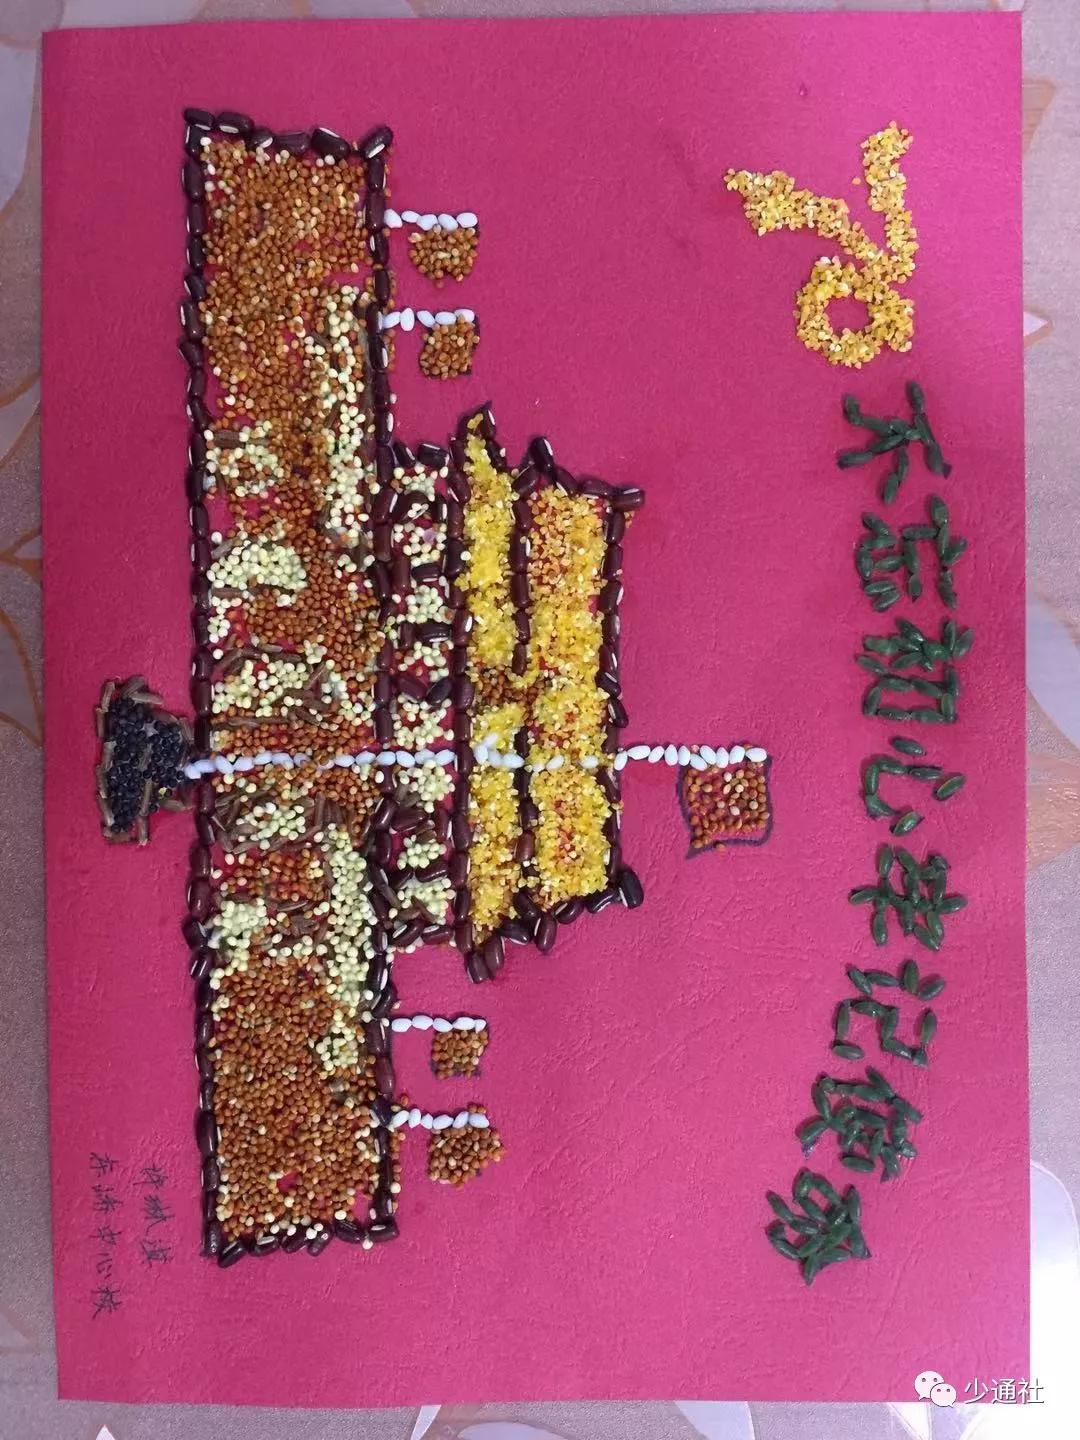 小记者们还动手制作了庆祝中华人民共和国成立70周年五谷杂粮粘贴画